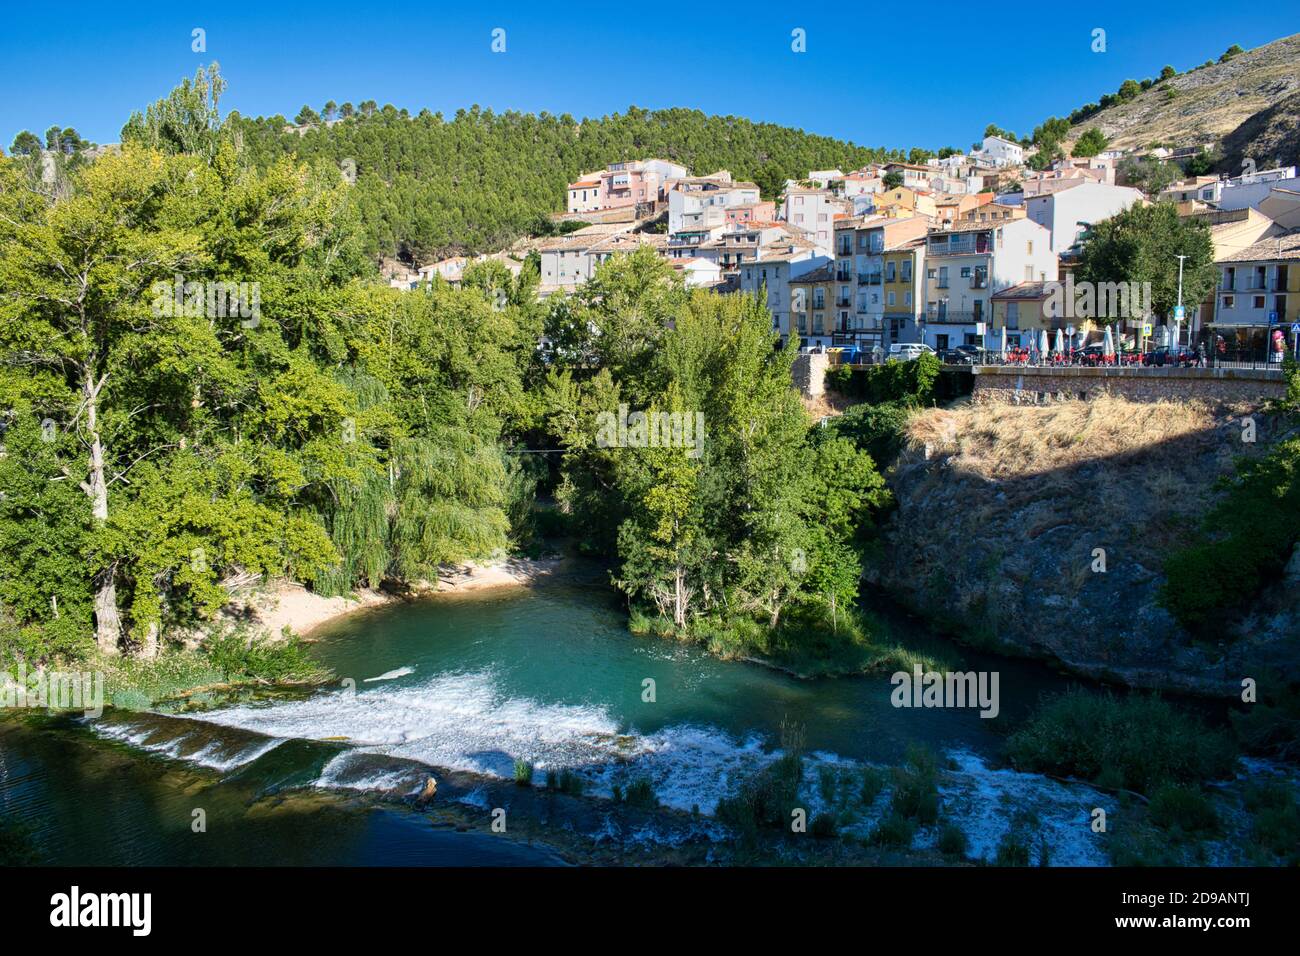 Fleuve Jucar et quartier de San Anton dans la ville de Cuenca, Espagne Banque D'Images